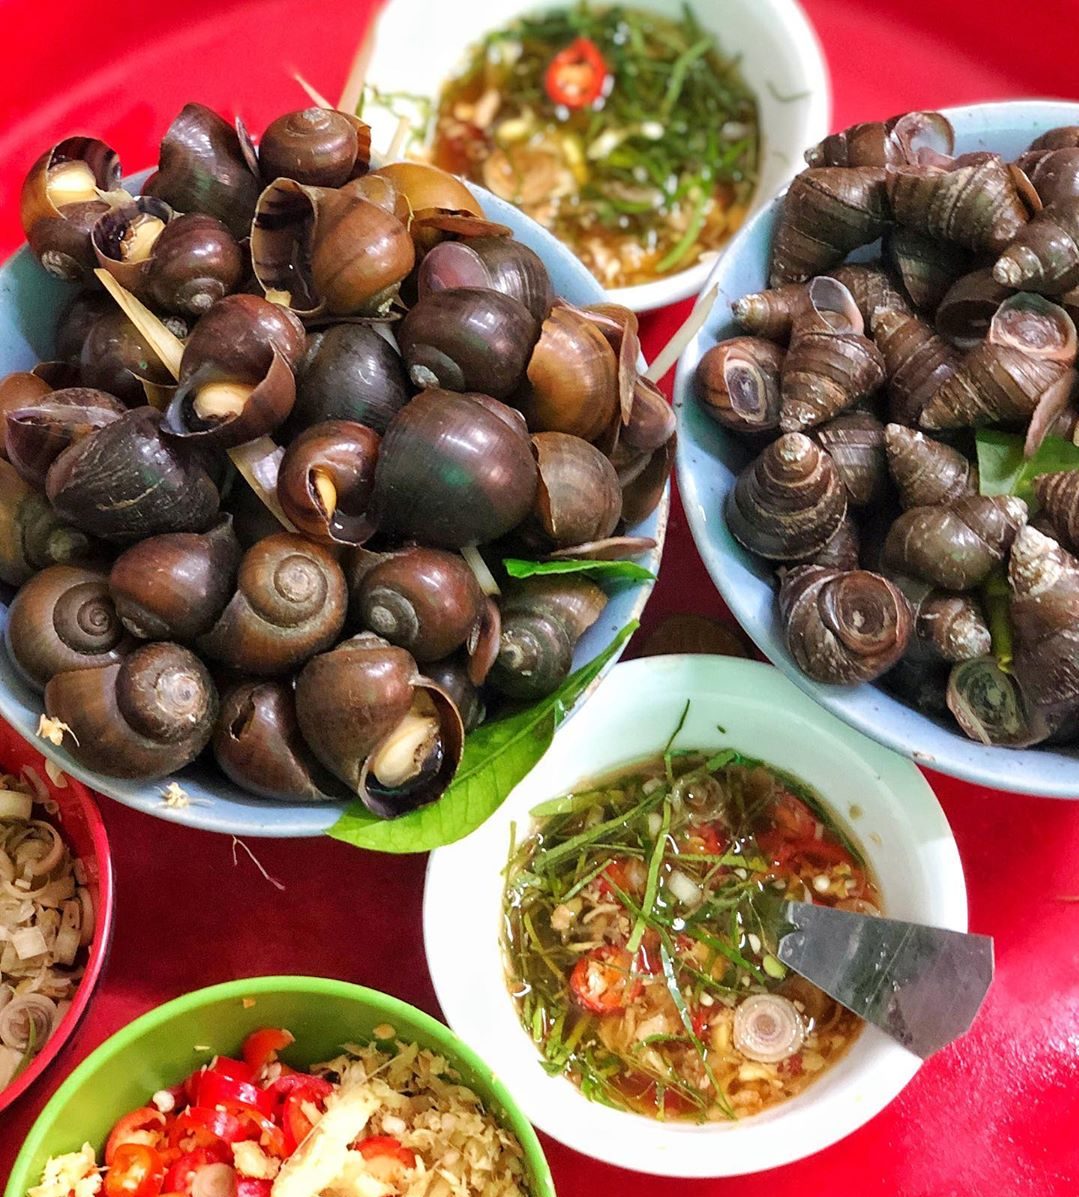 Ốc luộn - một món ăn vặt vỉa hè được người Hà Nội ưa chuộng trong những ngày đông lạnh giá